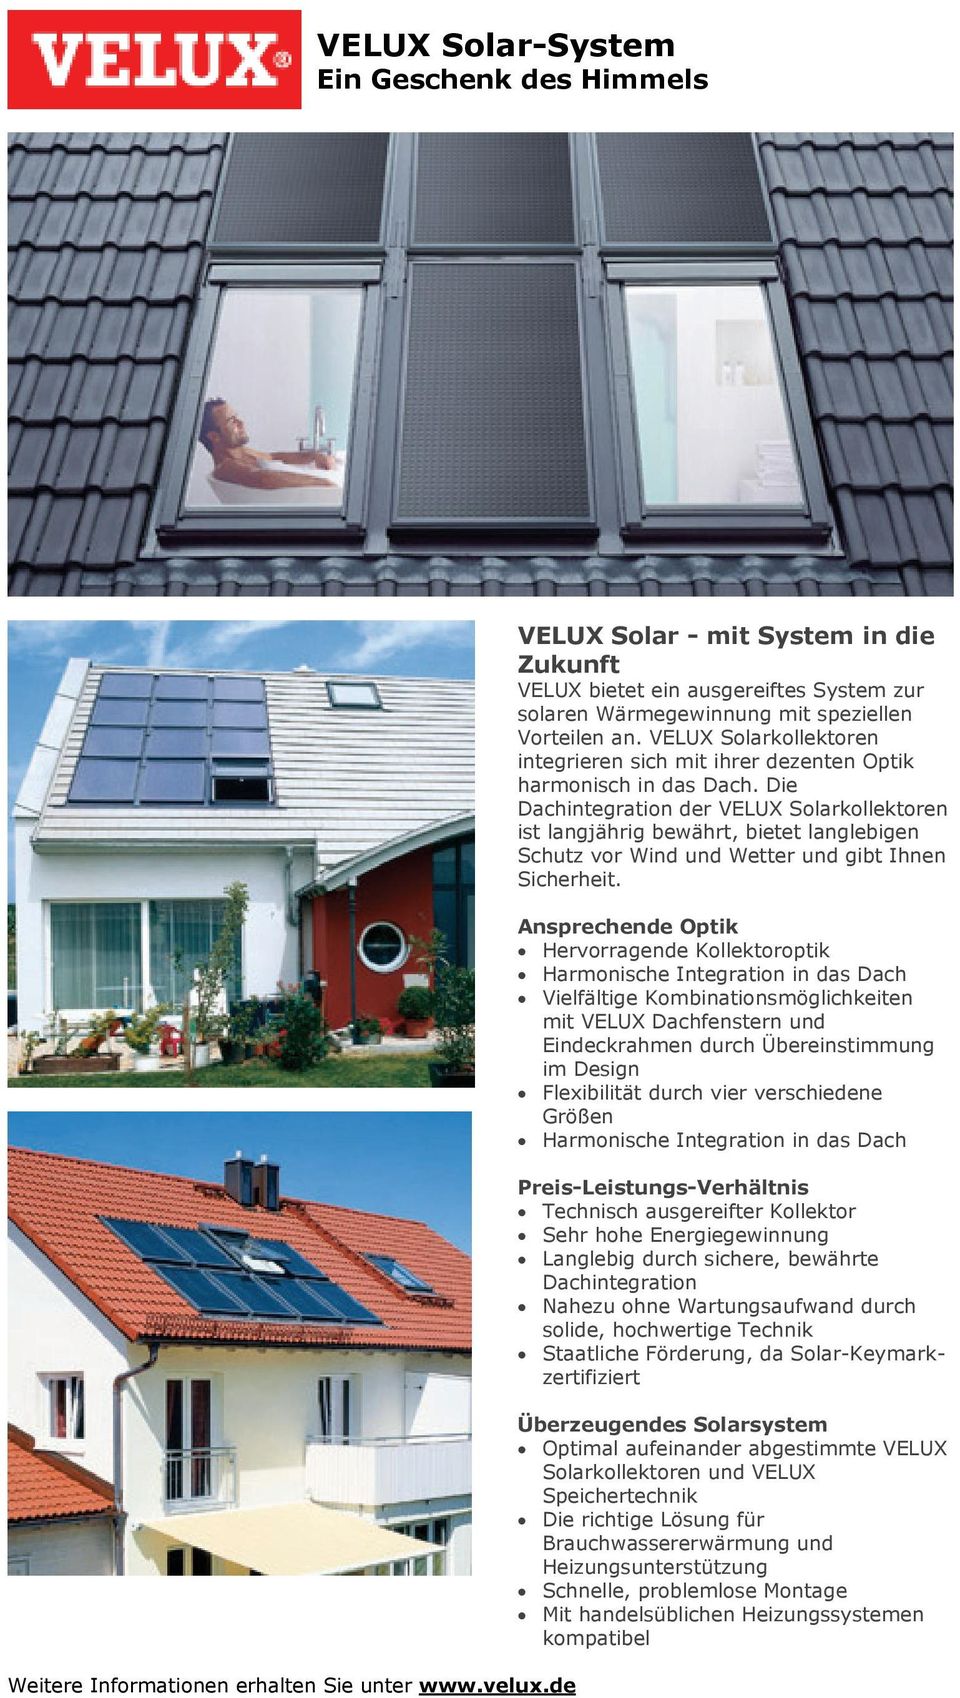 Die Dachintegration der VELUX Solarkollektoren ist langjährig bewährt, bietet langlebigen Schutz vor Wind und Wetter und gibt Ihnen Sicherheit.